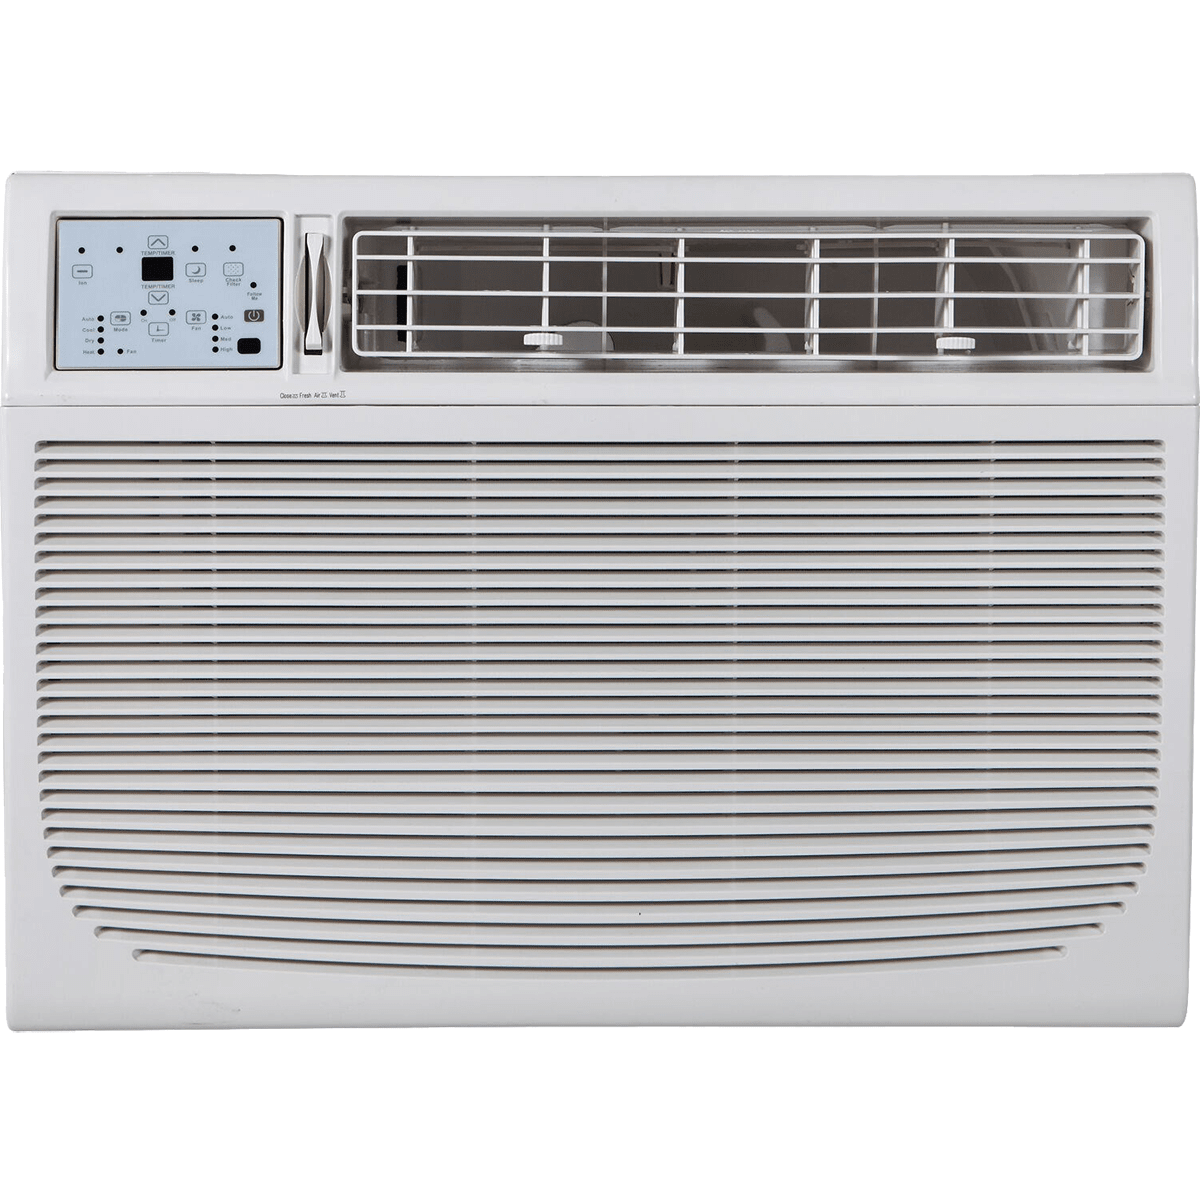 Keystone 18,000 BTU Window Air Conditioner